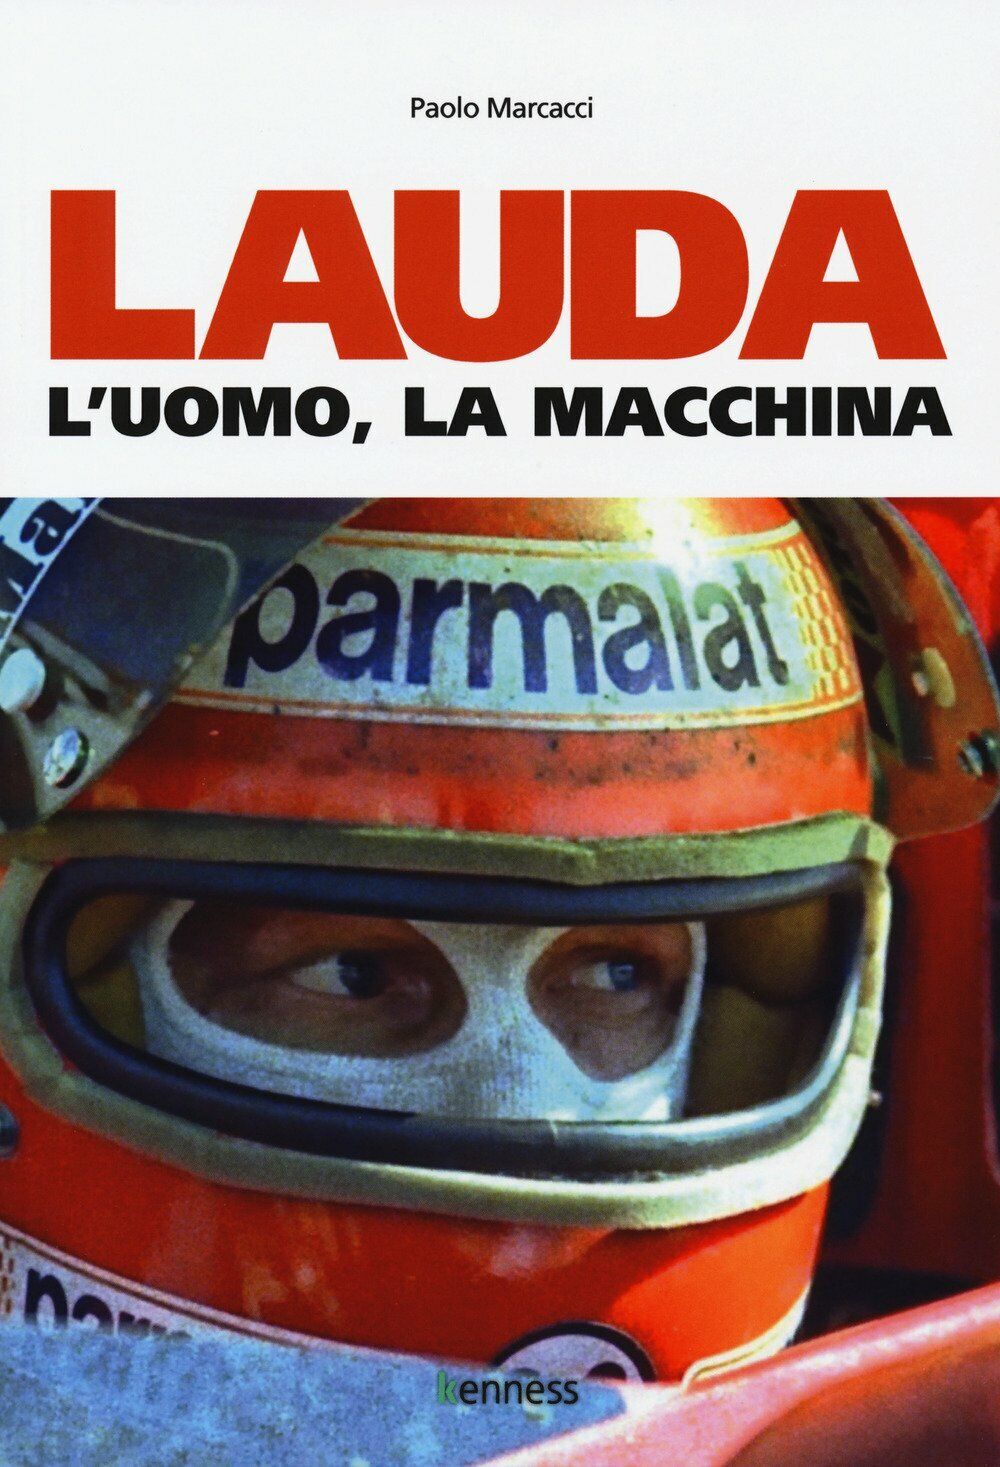 Lauda. L'uomo, la macchina - Paolo Marcacci - Kenness, 2018